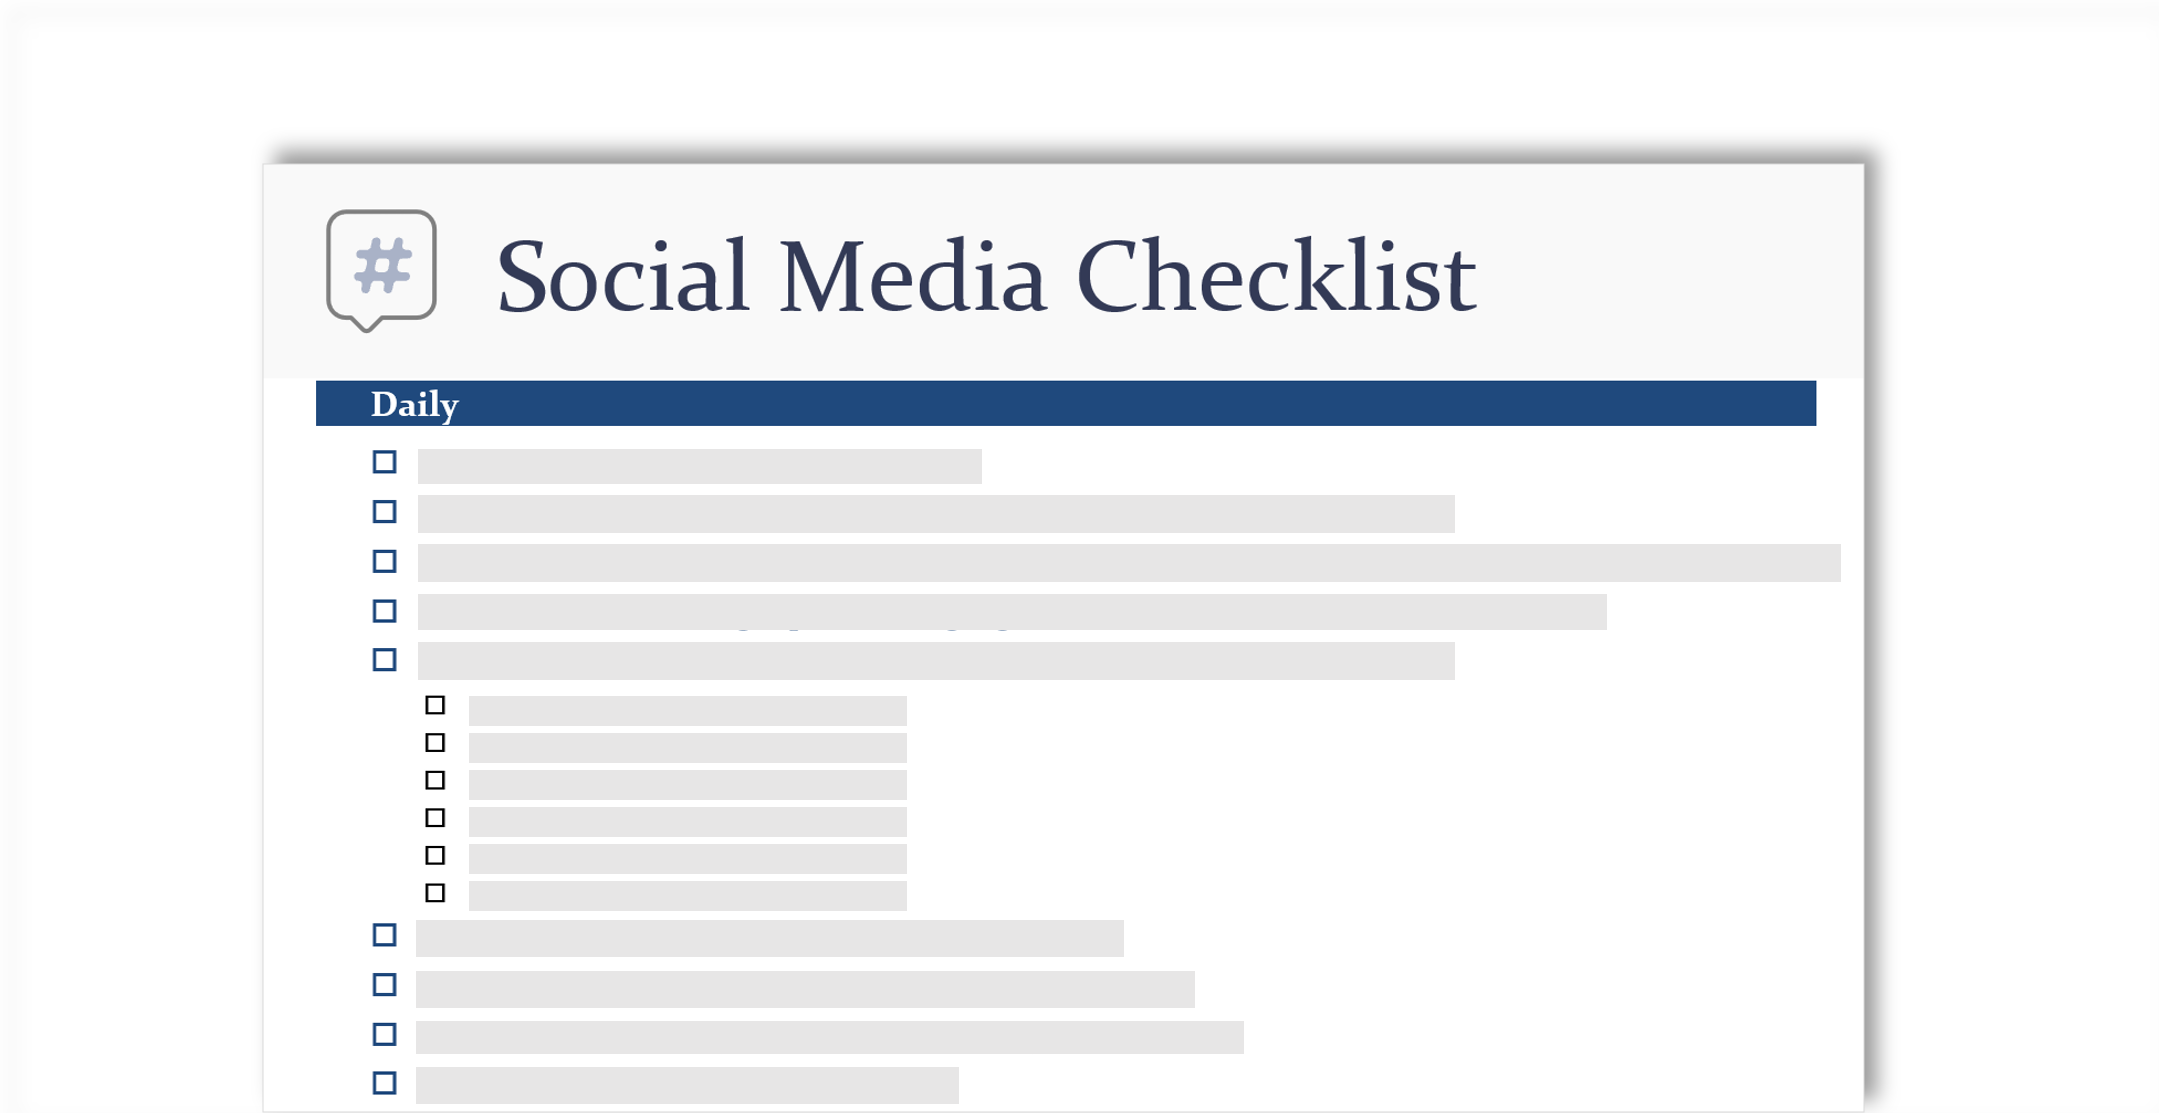 صورة تصورية لقائمة اختيار وسائل التواصل الاجتماعي